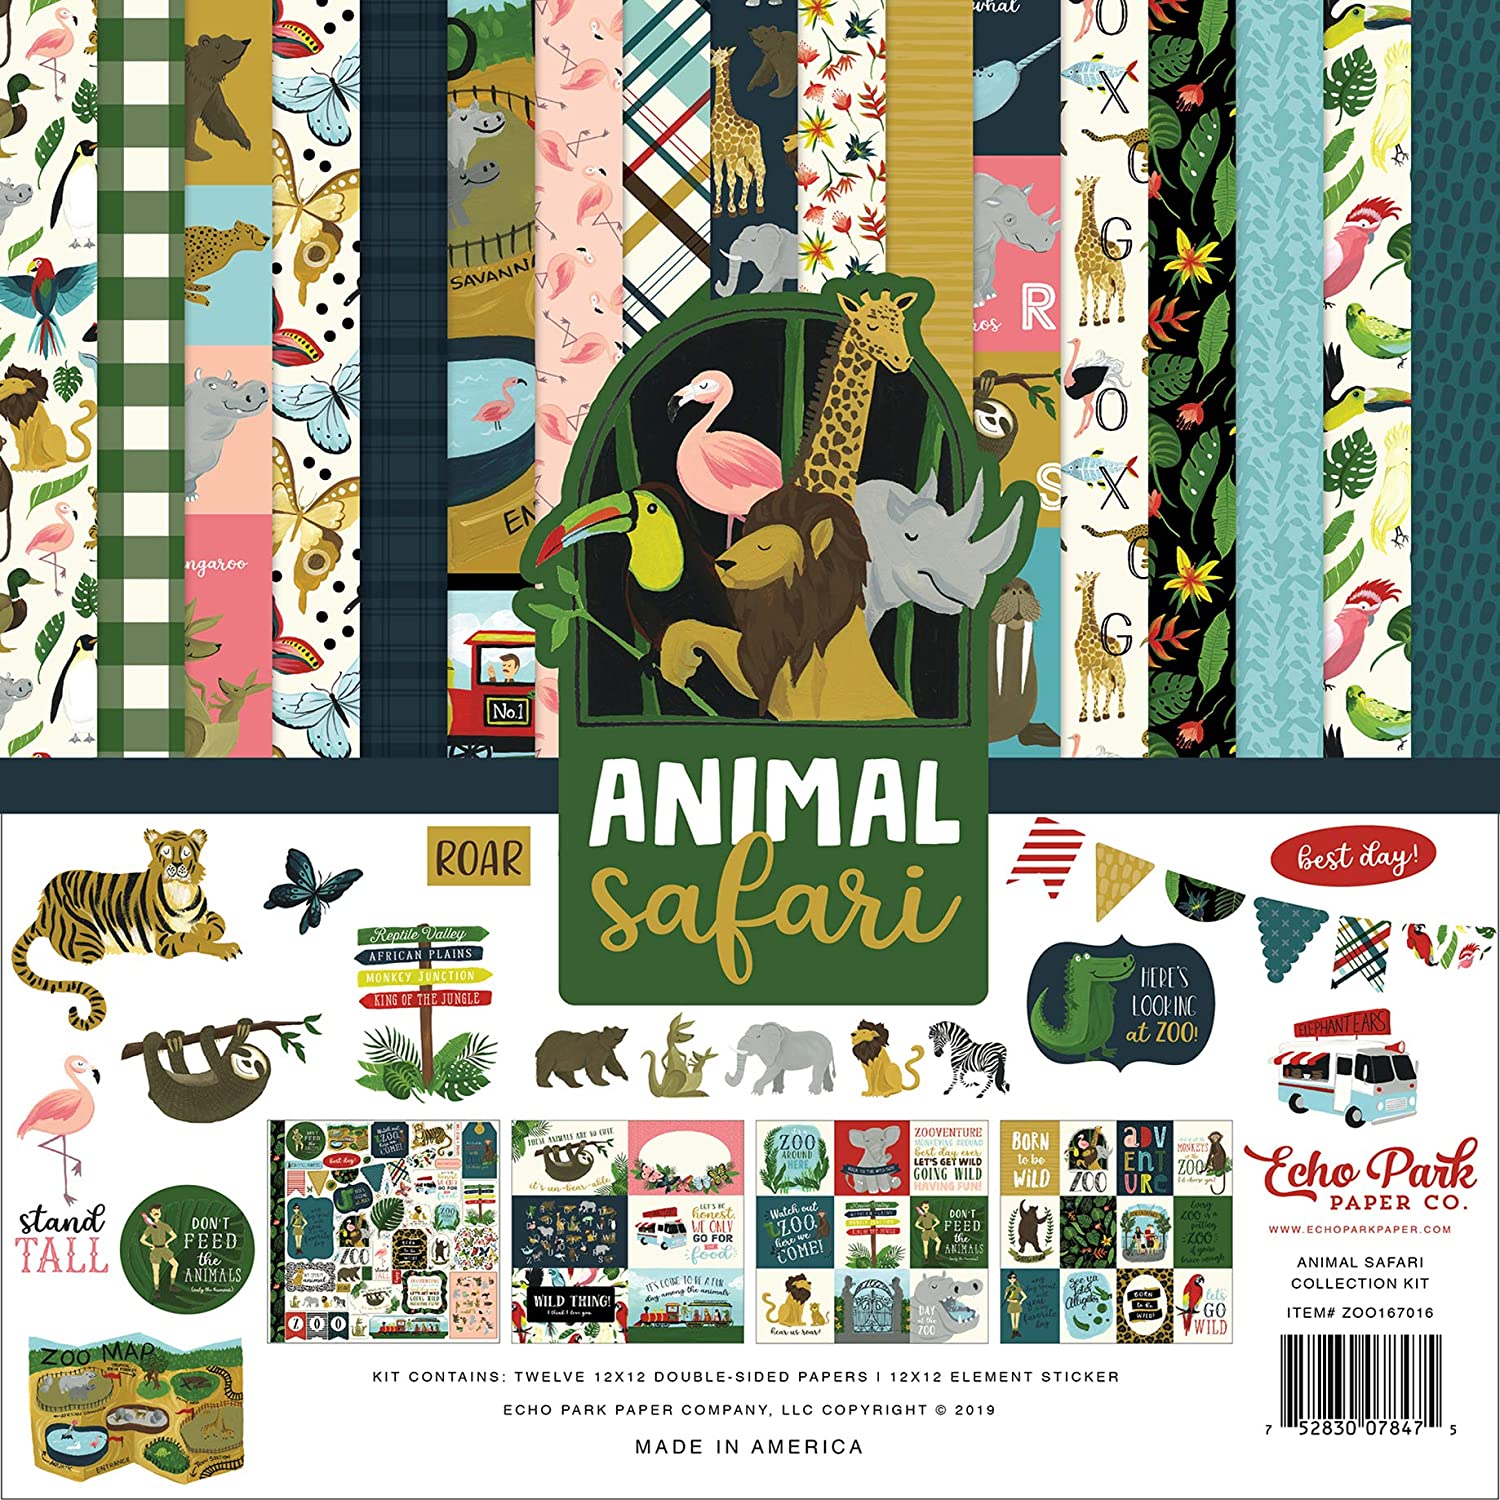 Álbum de recortes con tema animal más lindo - Echo Park Animal Safari almohadilla de papel de 12 x 12 pulgadas